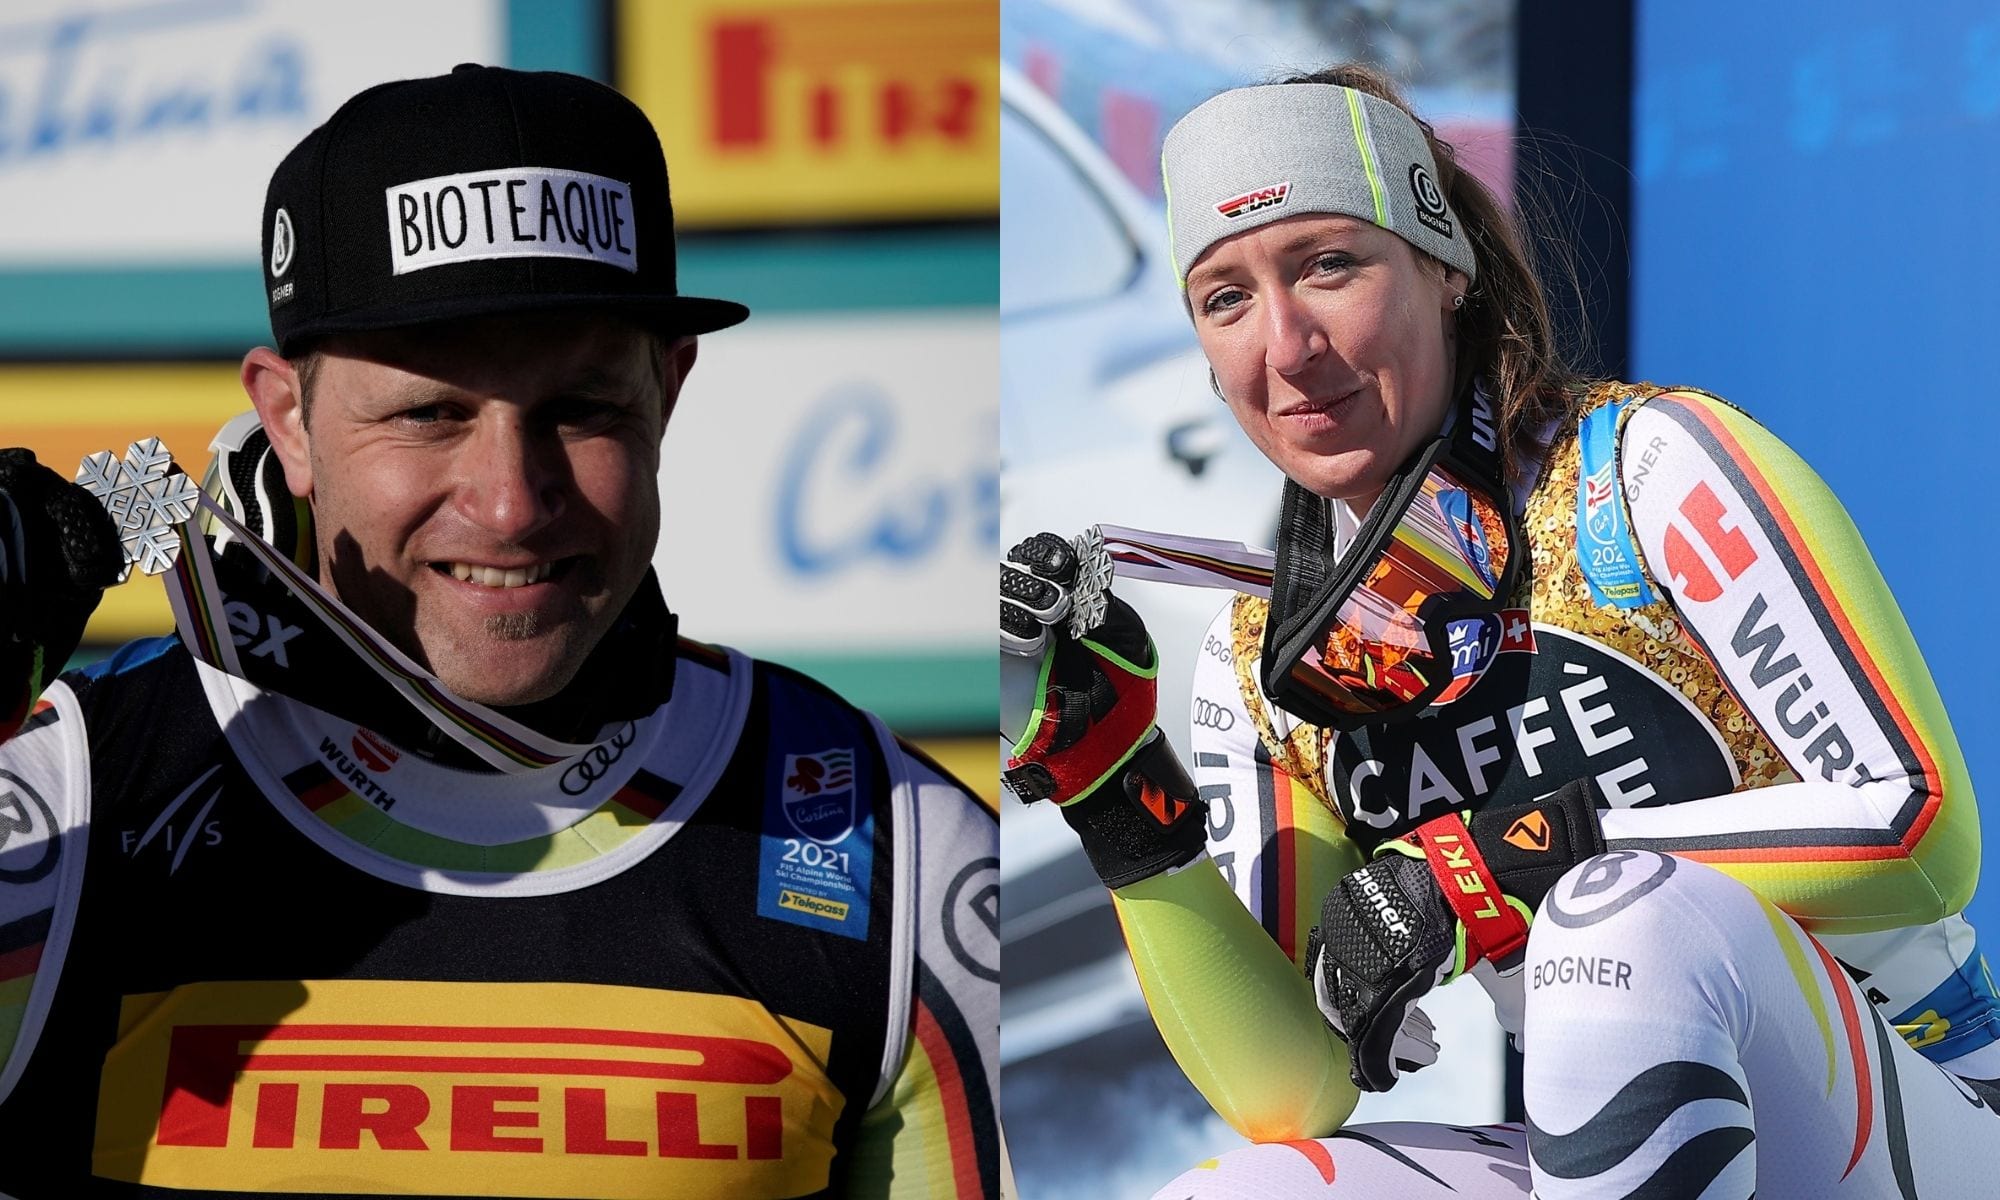 Deutschland glänzt mit 2 Medaillen bei den Ski-Weltmeisterschaften